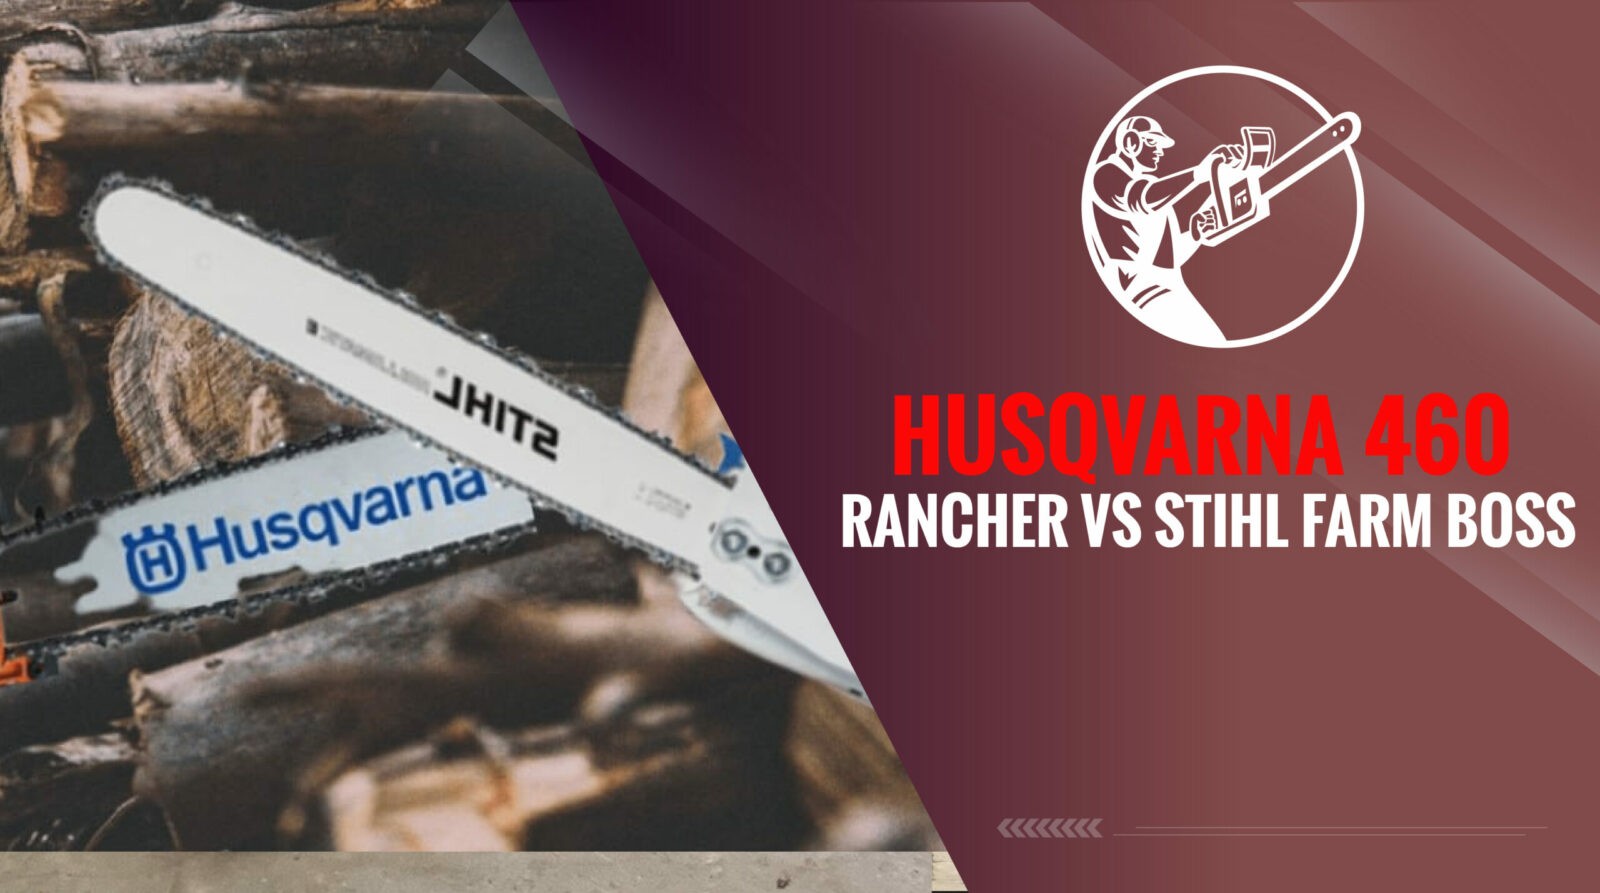 Husqvarna 460 Rancher vs Stihl Farm Boss - This Is A Tough One